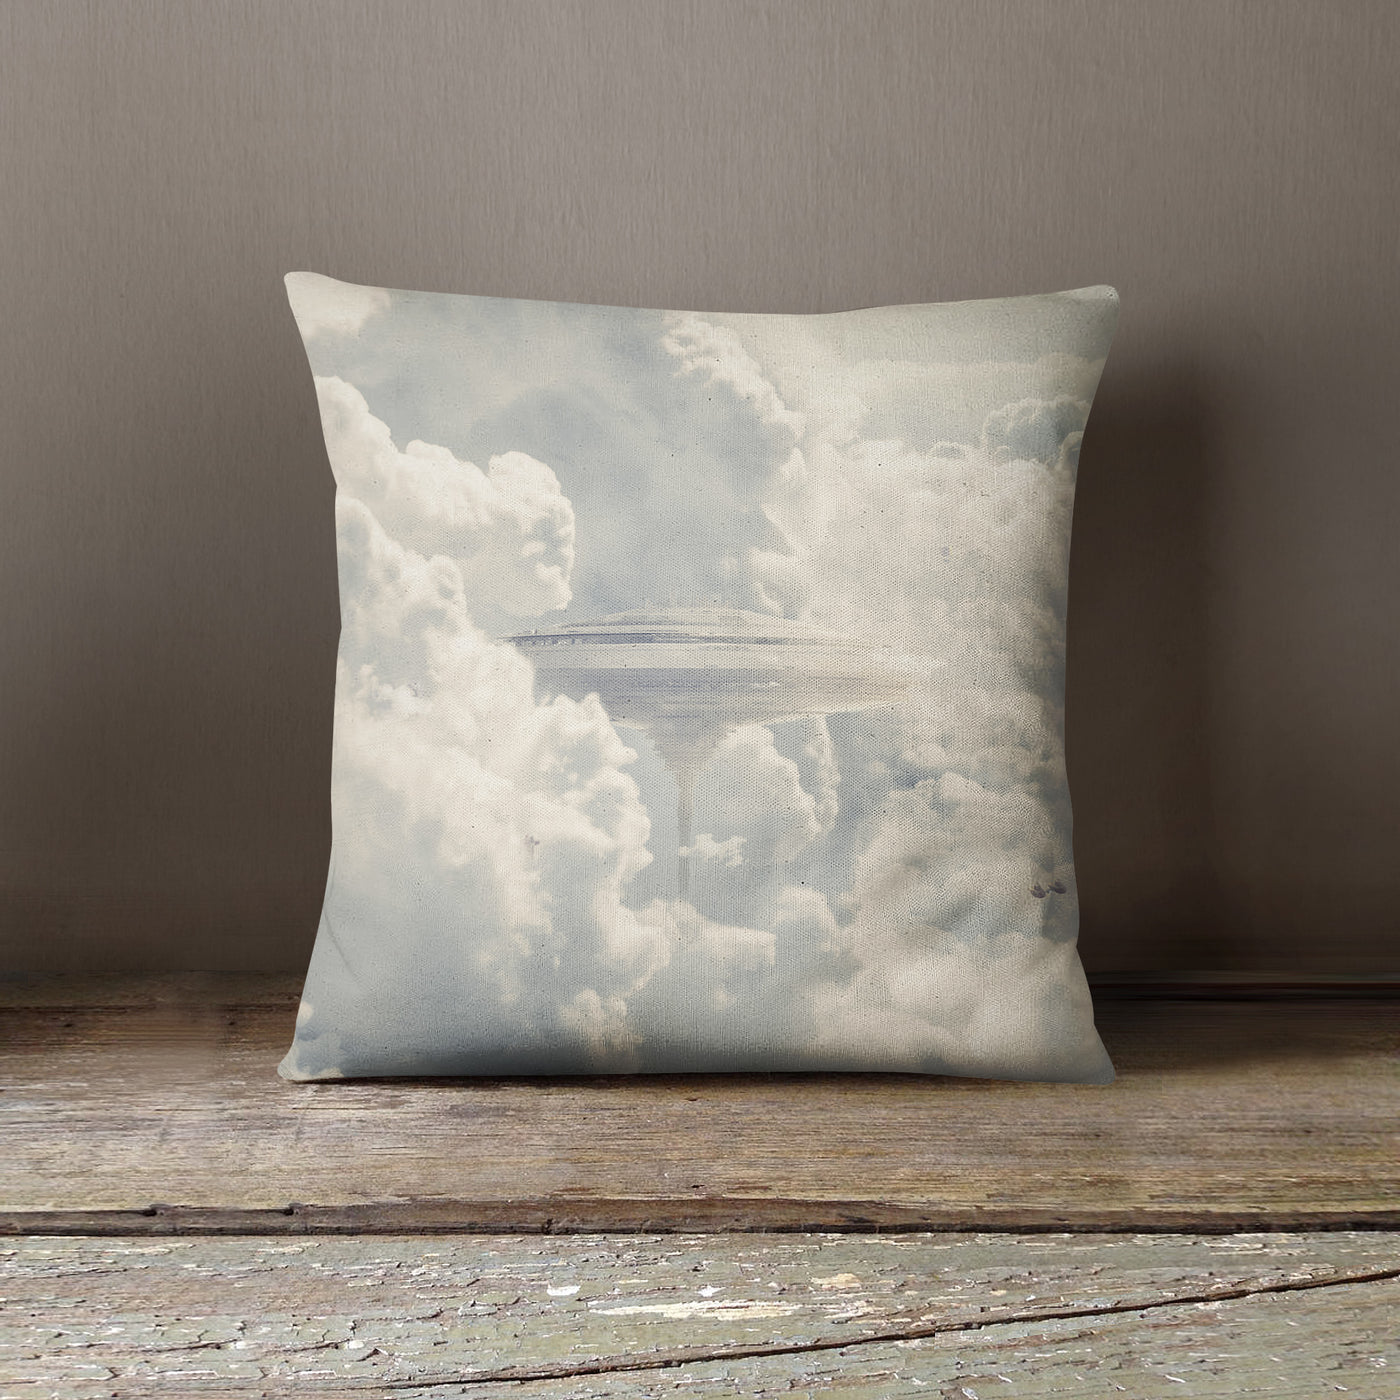 Bespin Cloud City Star Wars Pillow